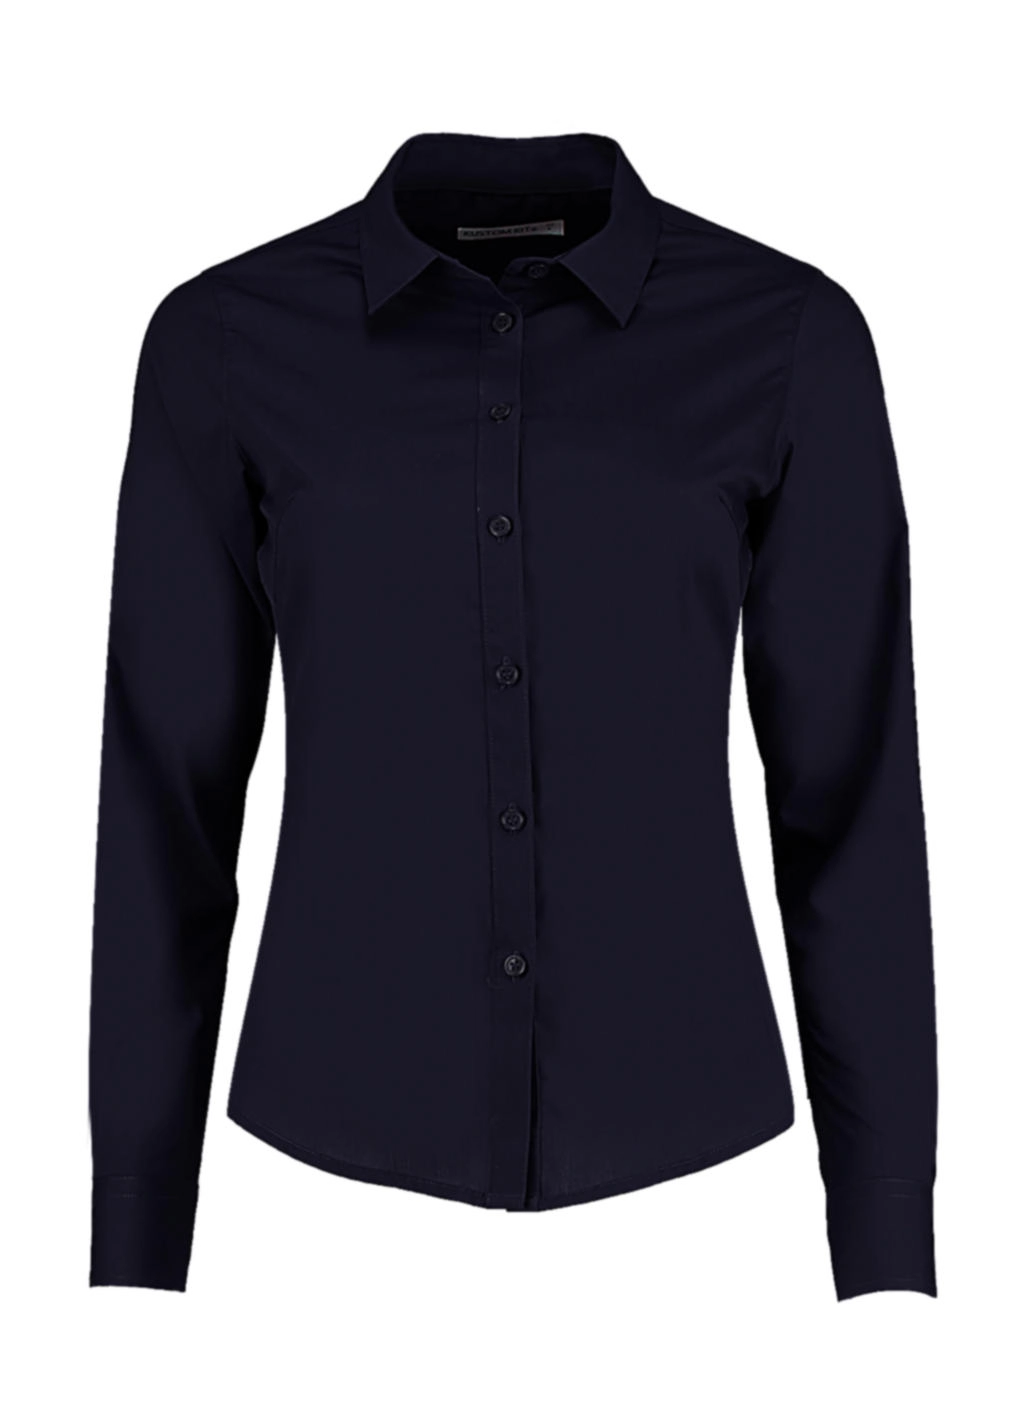 Women`s Tailored Fit Poplin Shirt zum Besticken und Bedrucken in der Farbe Dark Navy mit Ihren Logo, Schriftzug oder Motiv.